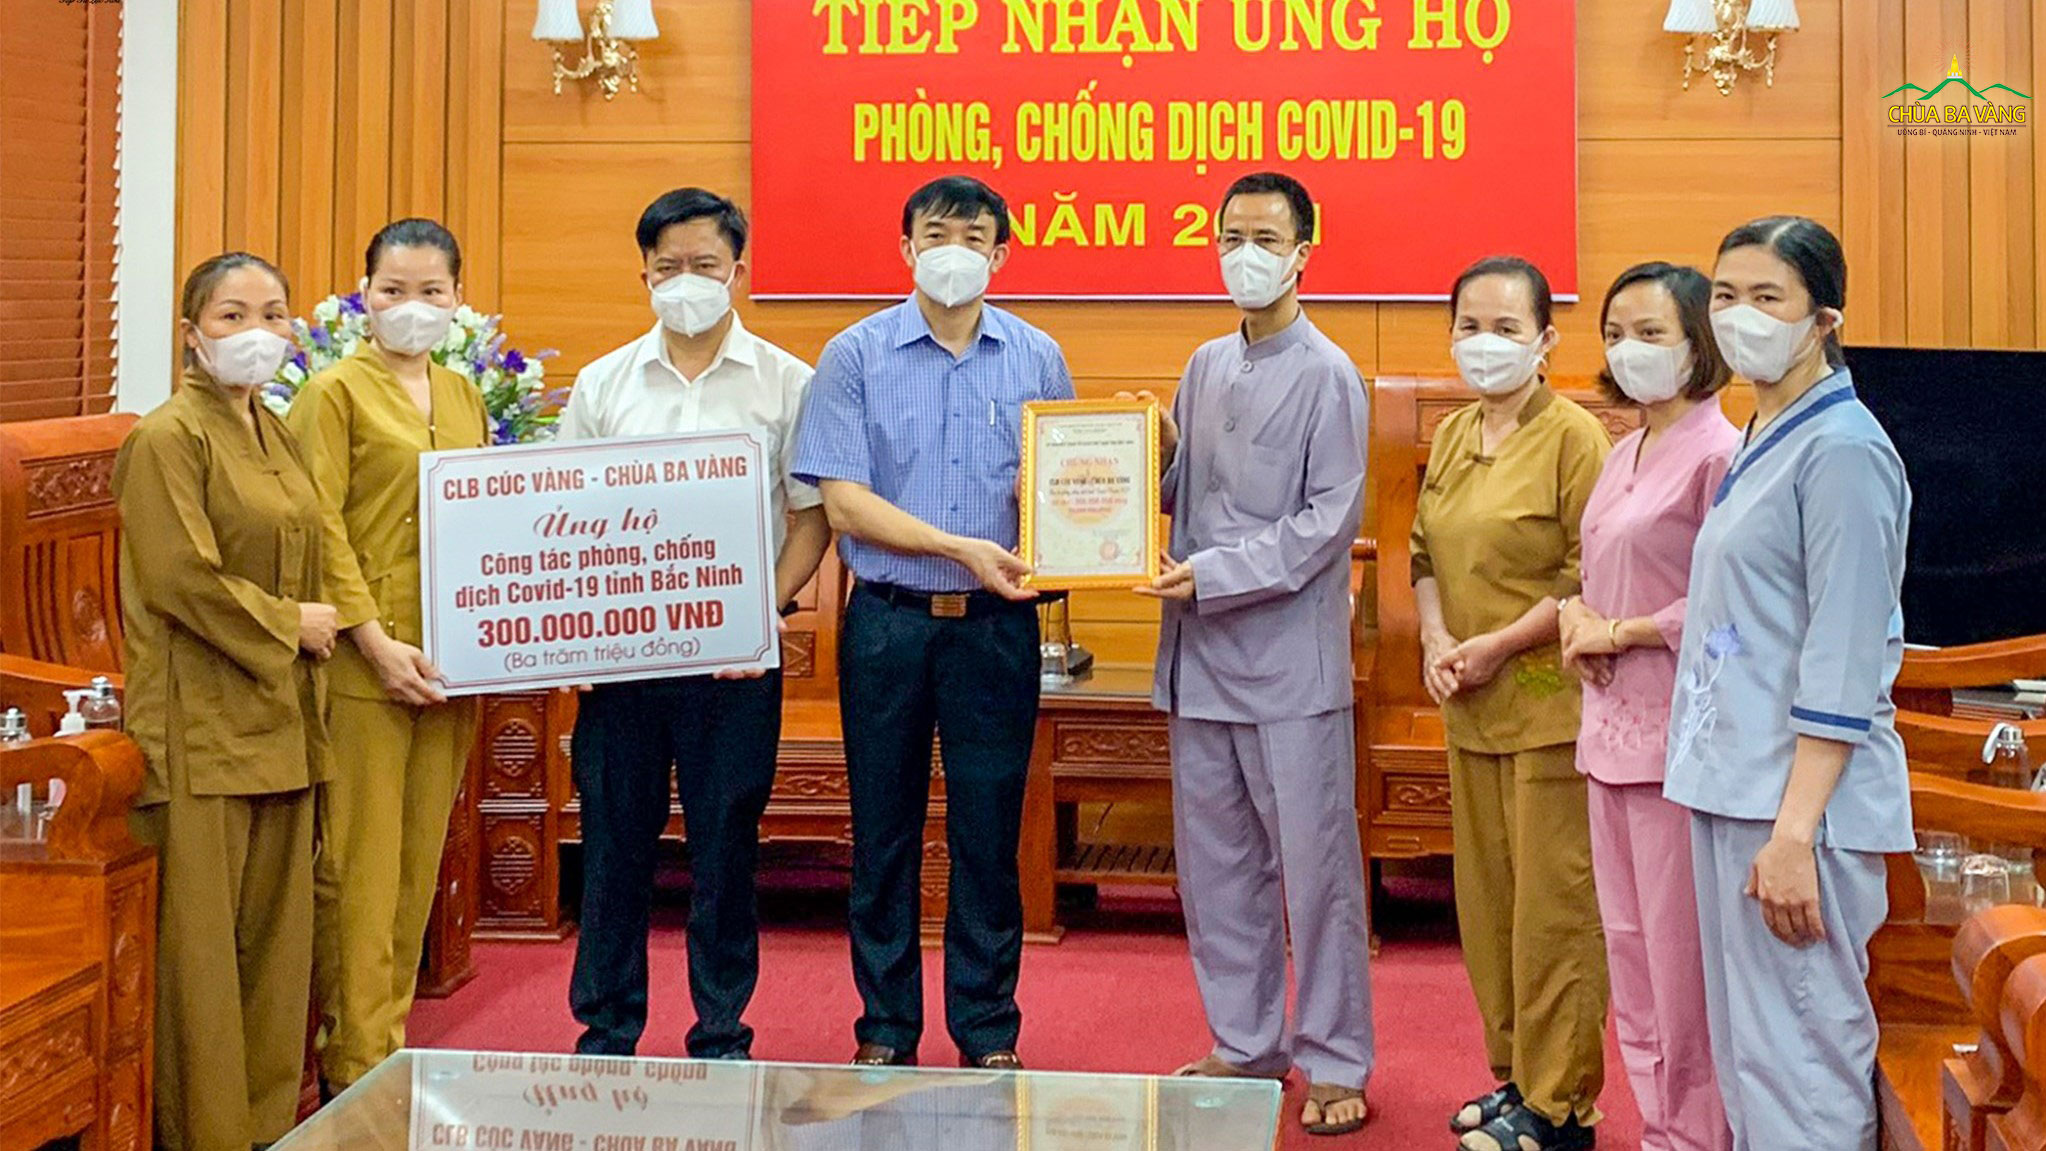 Tiếp nối các hoạt động vì cộng đồng trong mùa dịch Covid-19, Phật tử Câu lạc bộ Cúc Vàng - Tập Tu Lục Hòa đã trao tặng 300.000.000 VNĐ (ba trăm triệu đồng chẵn) cho Ban Thường trực Ủy ban Mặt trận Tổ quốc Việt Nam tỉnh Bắc Ninh